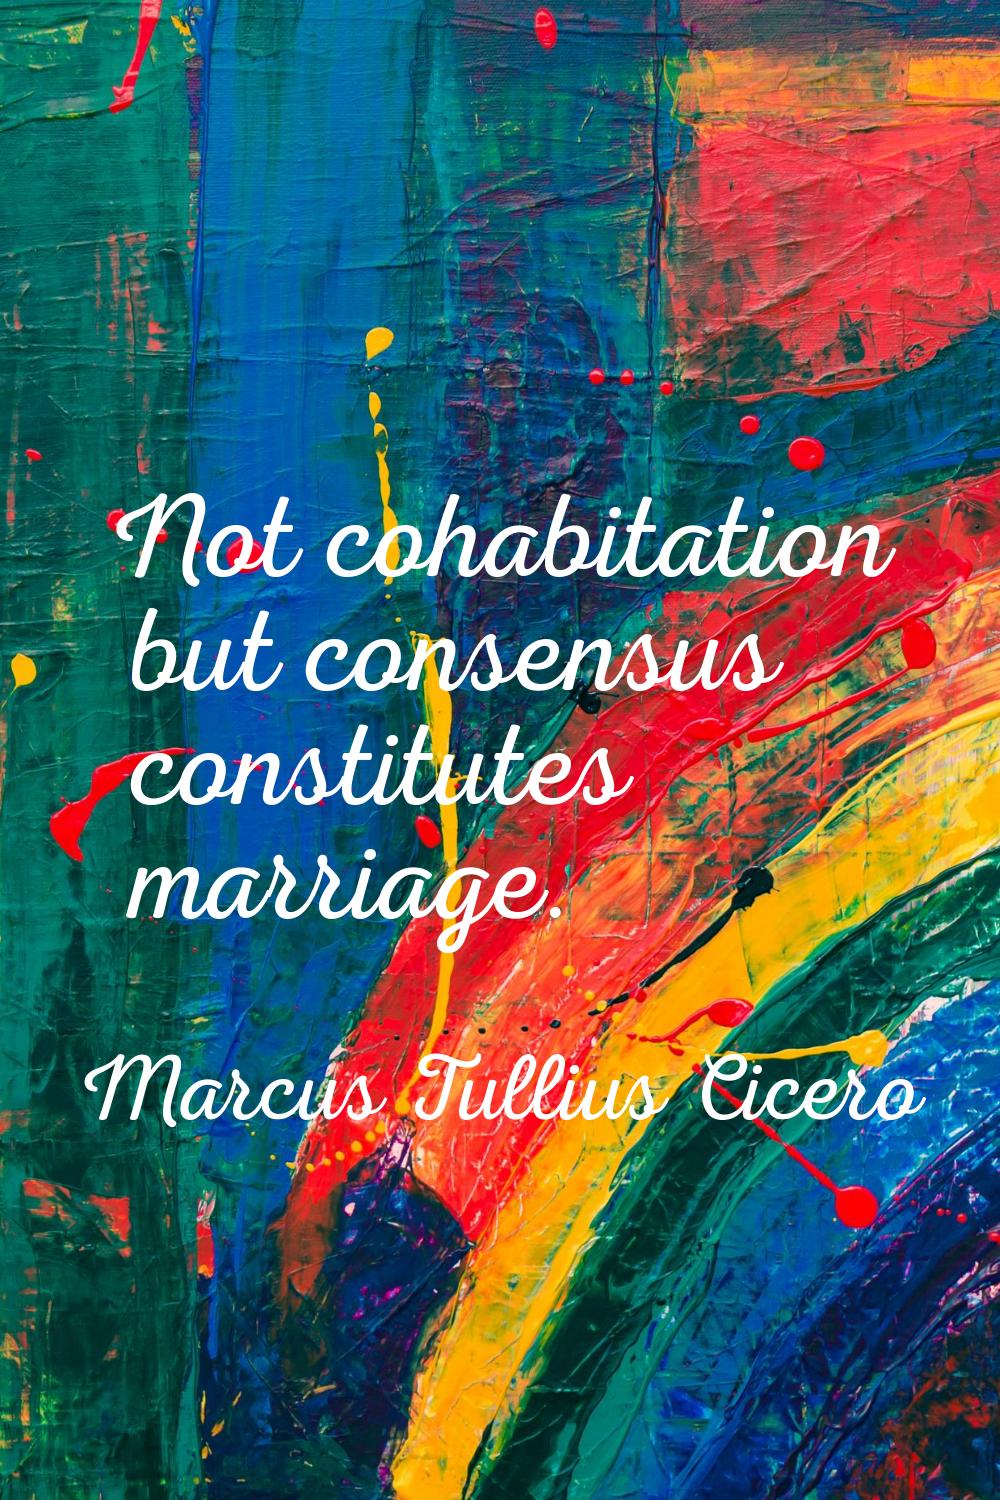 Not cohabitation but consensus constitutes marriage.